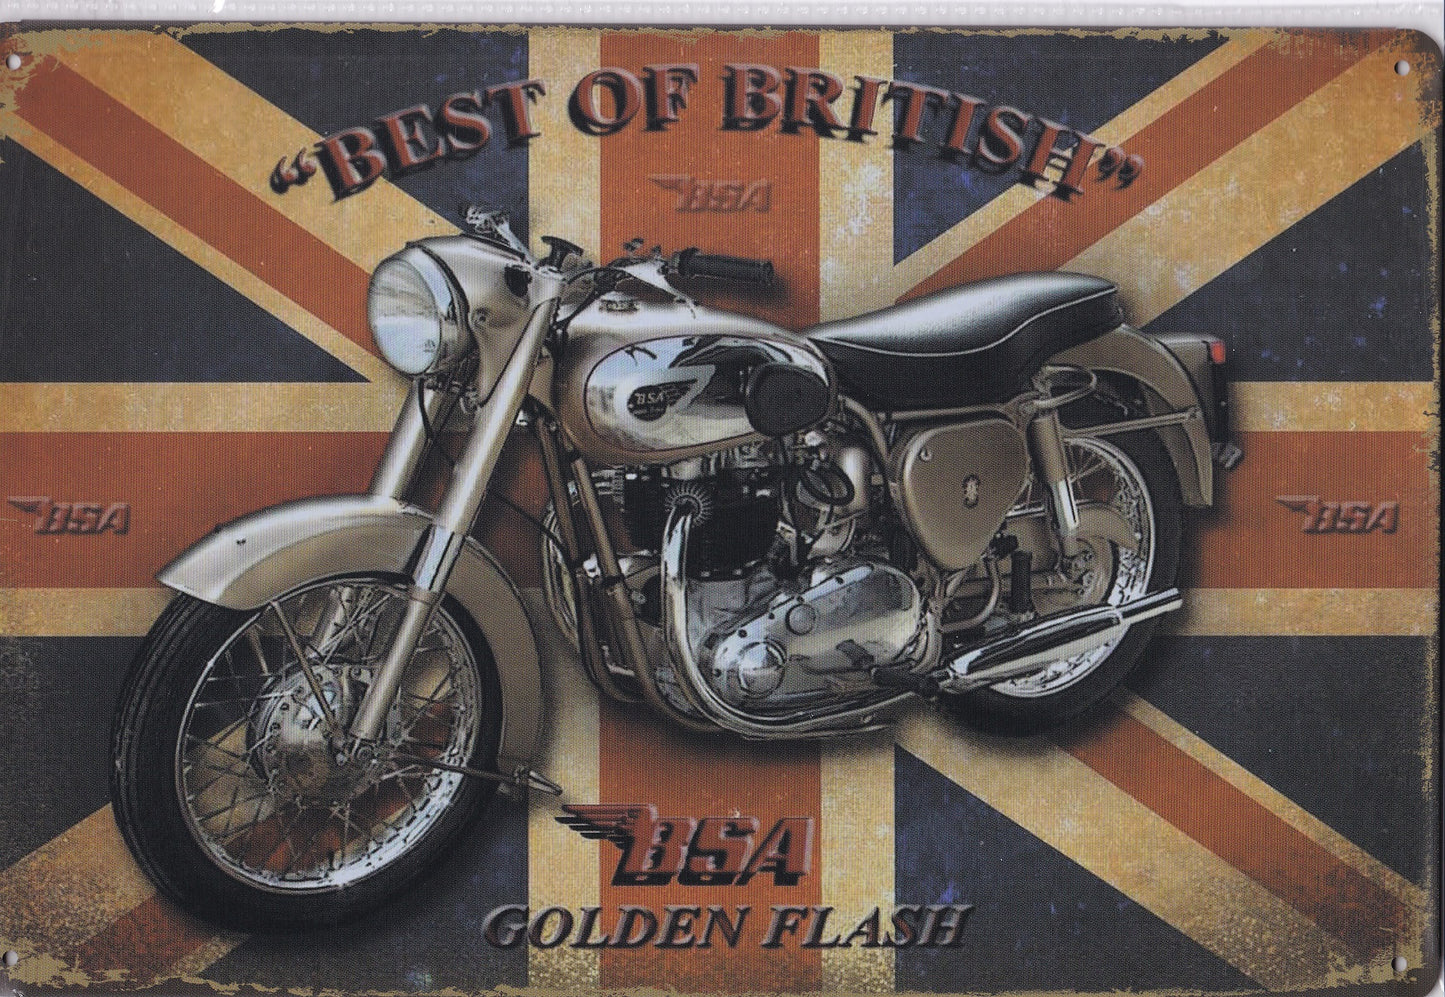 BSA Motorcycle Vintage Metal Sign